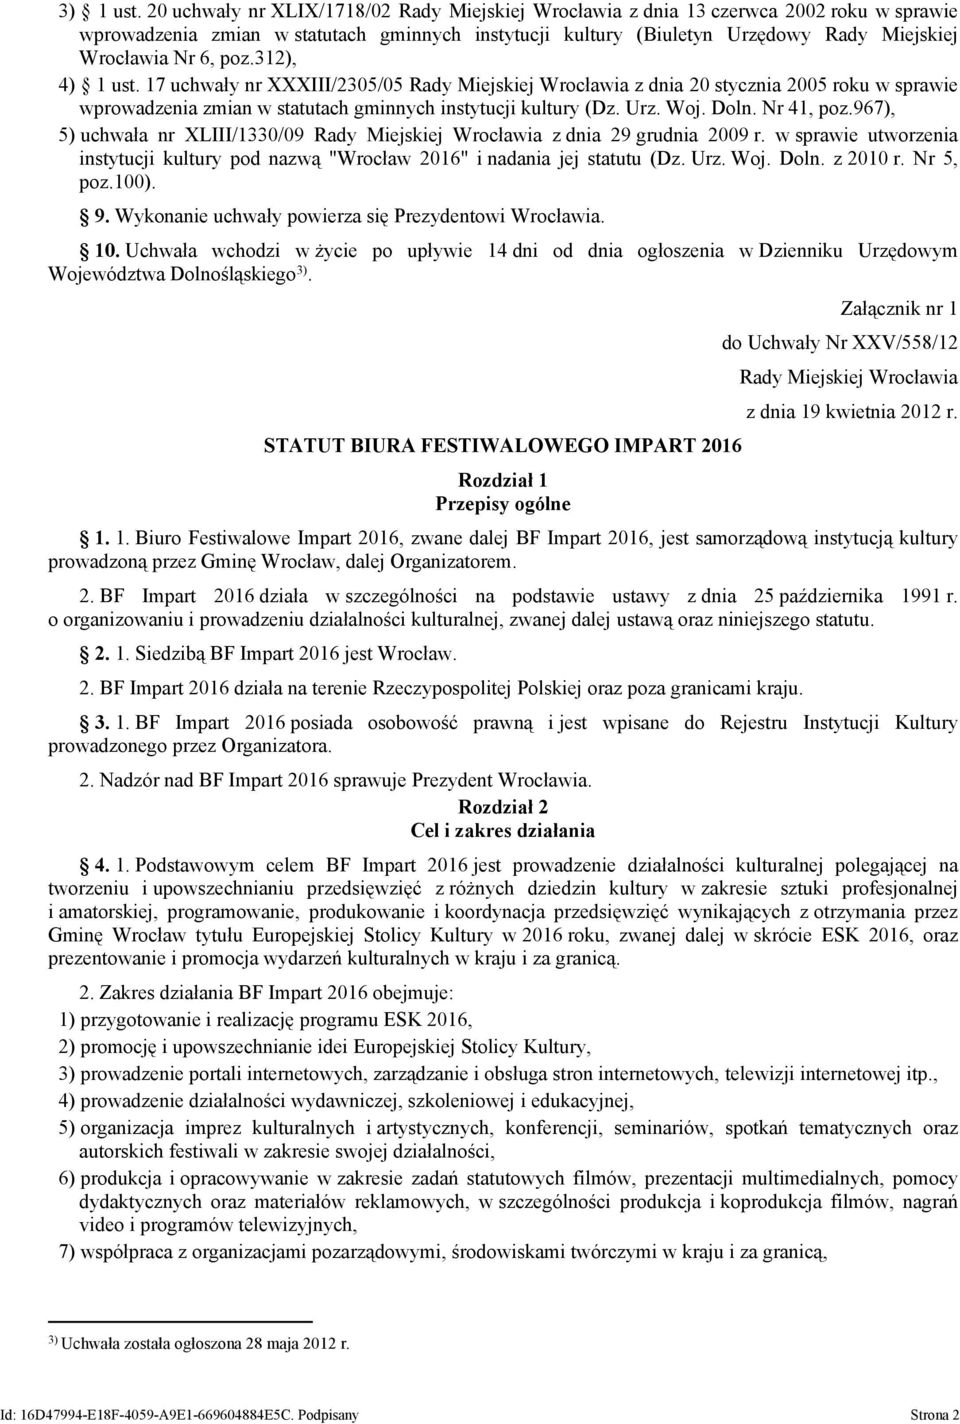 poz.312), 4) 1 ust. 17 uchwały nr XXXIII/2305/05 Rady Miejskiej Wrocławia z dnia 20 stycznia 2005 roku w sprawie wprowadzenia zmian w statutach gminnych instytucji kultury (Dz. Urz. Woj. Doln.